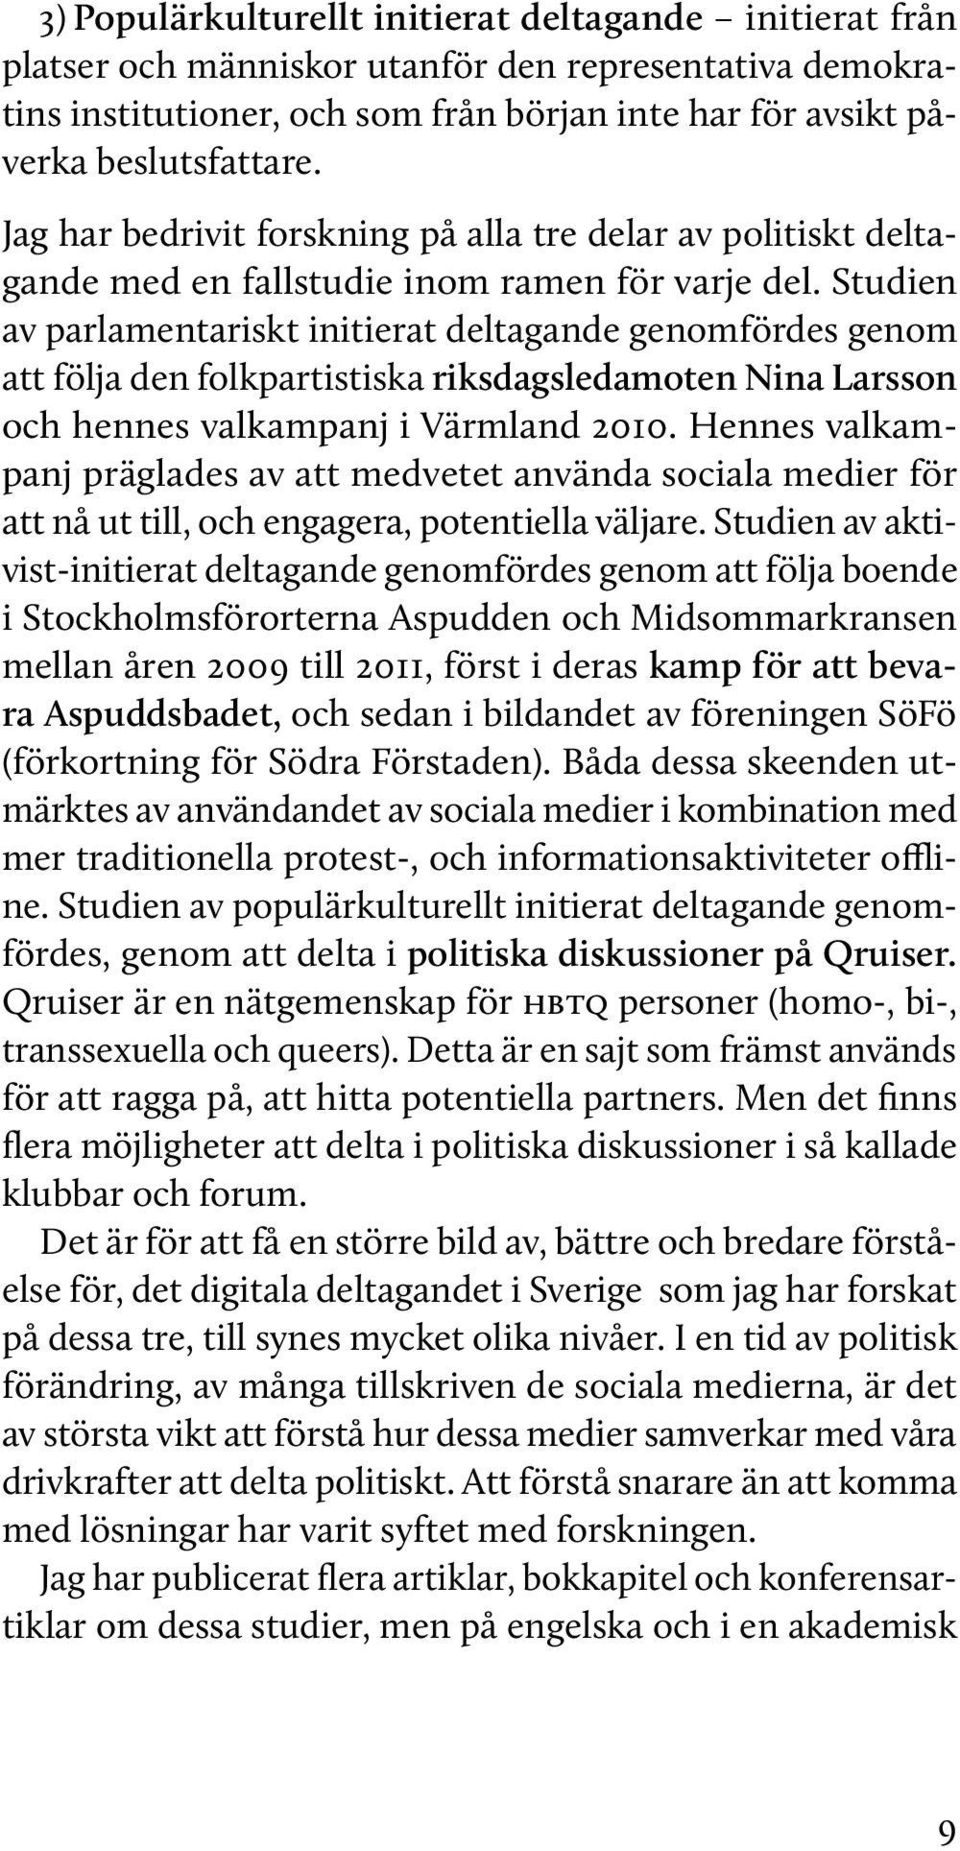 Studien av parlamentariskt initierat deltagande genomfördes genom att följa den folkpartistiska riksdagsledamoten Nina Larsson och hennes valkampanj i Värmland 2010.